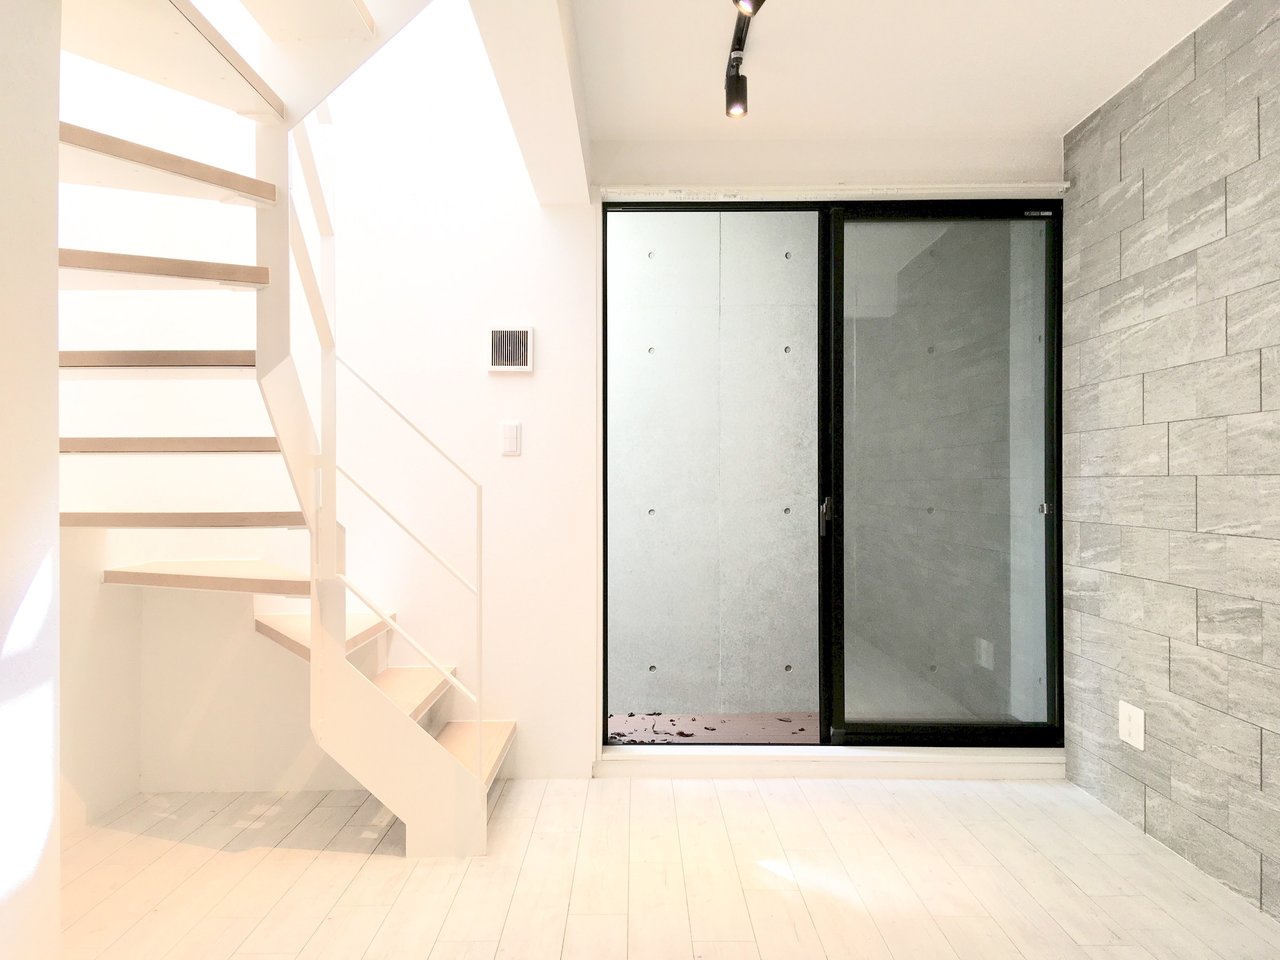 生活空間を分けられる 東京近郊 階段のあるメゾネットのお部屋まとめ Goodroom Journal